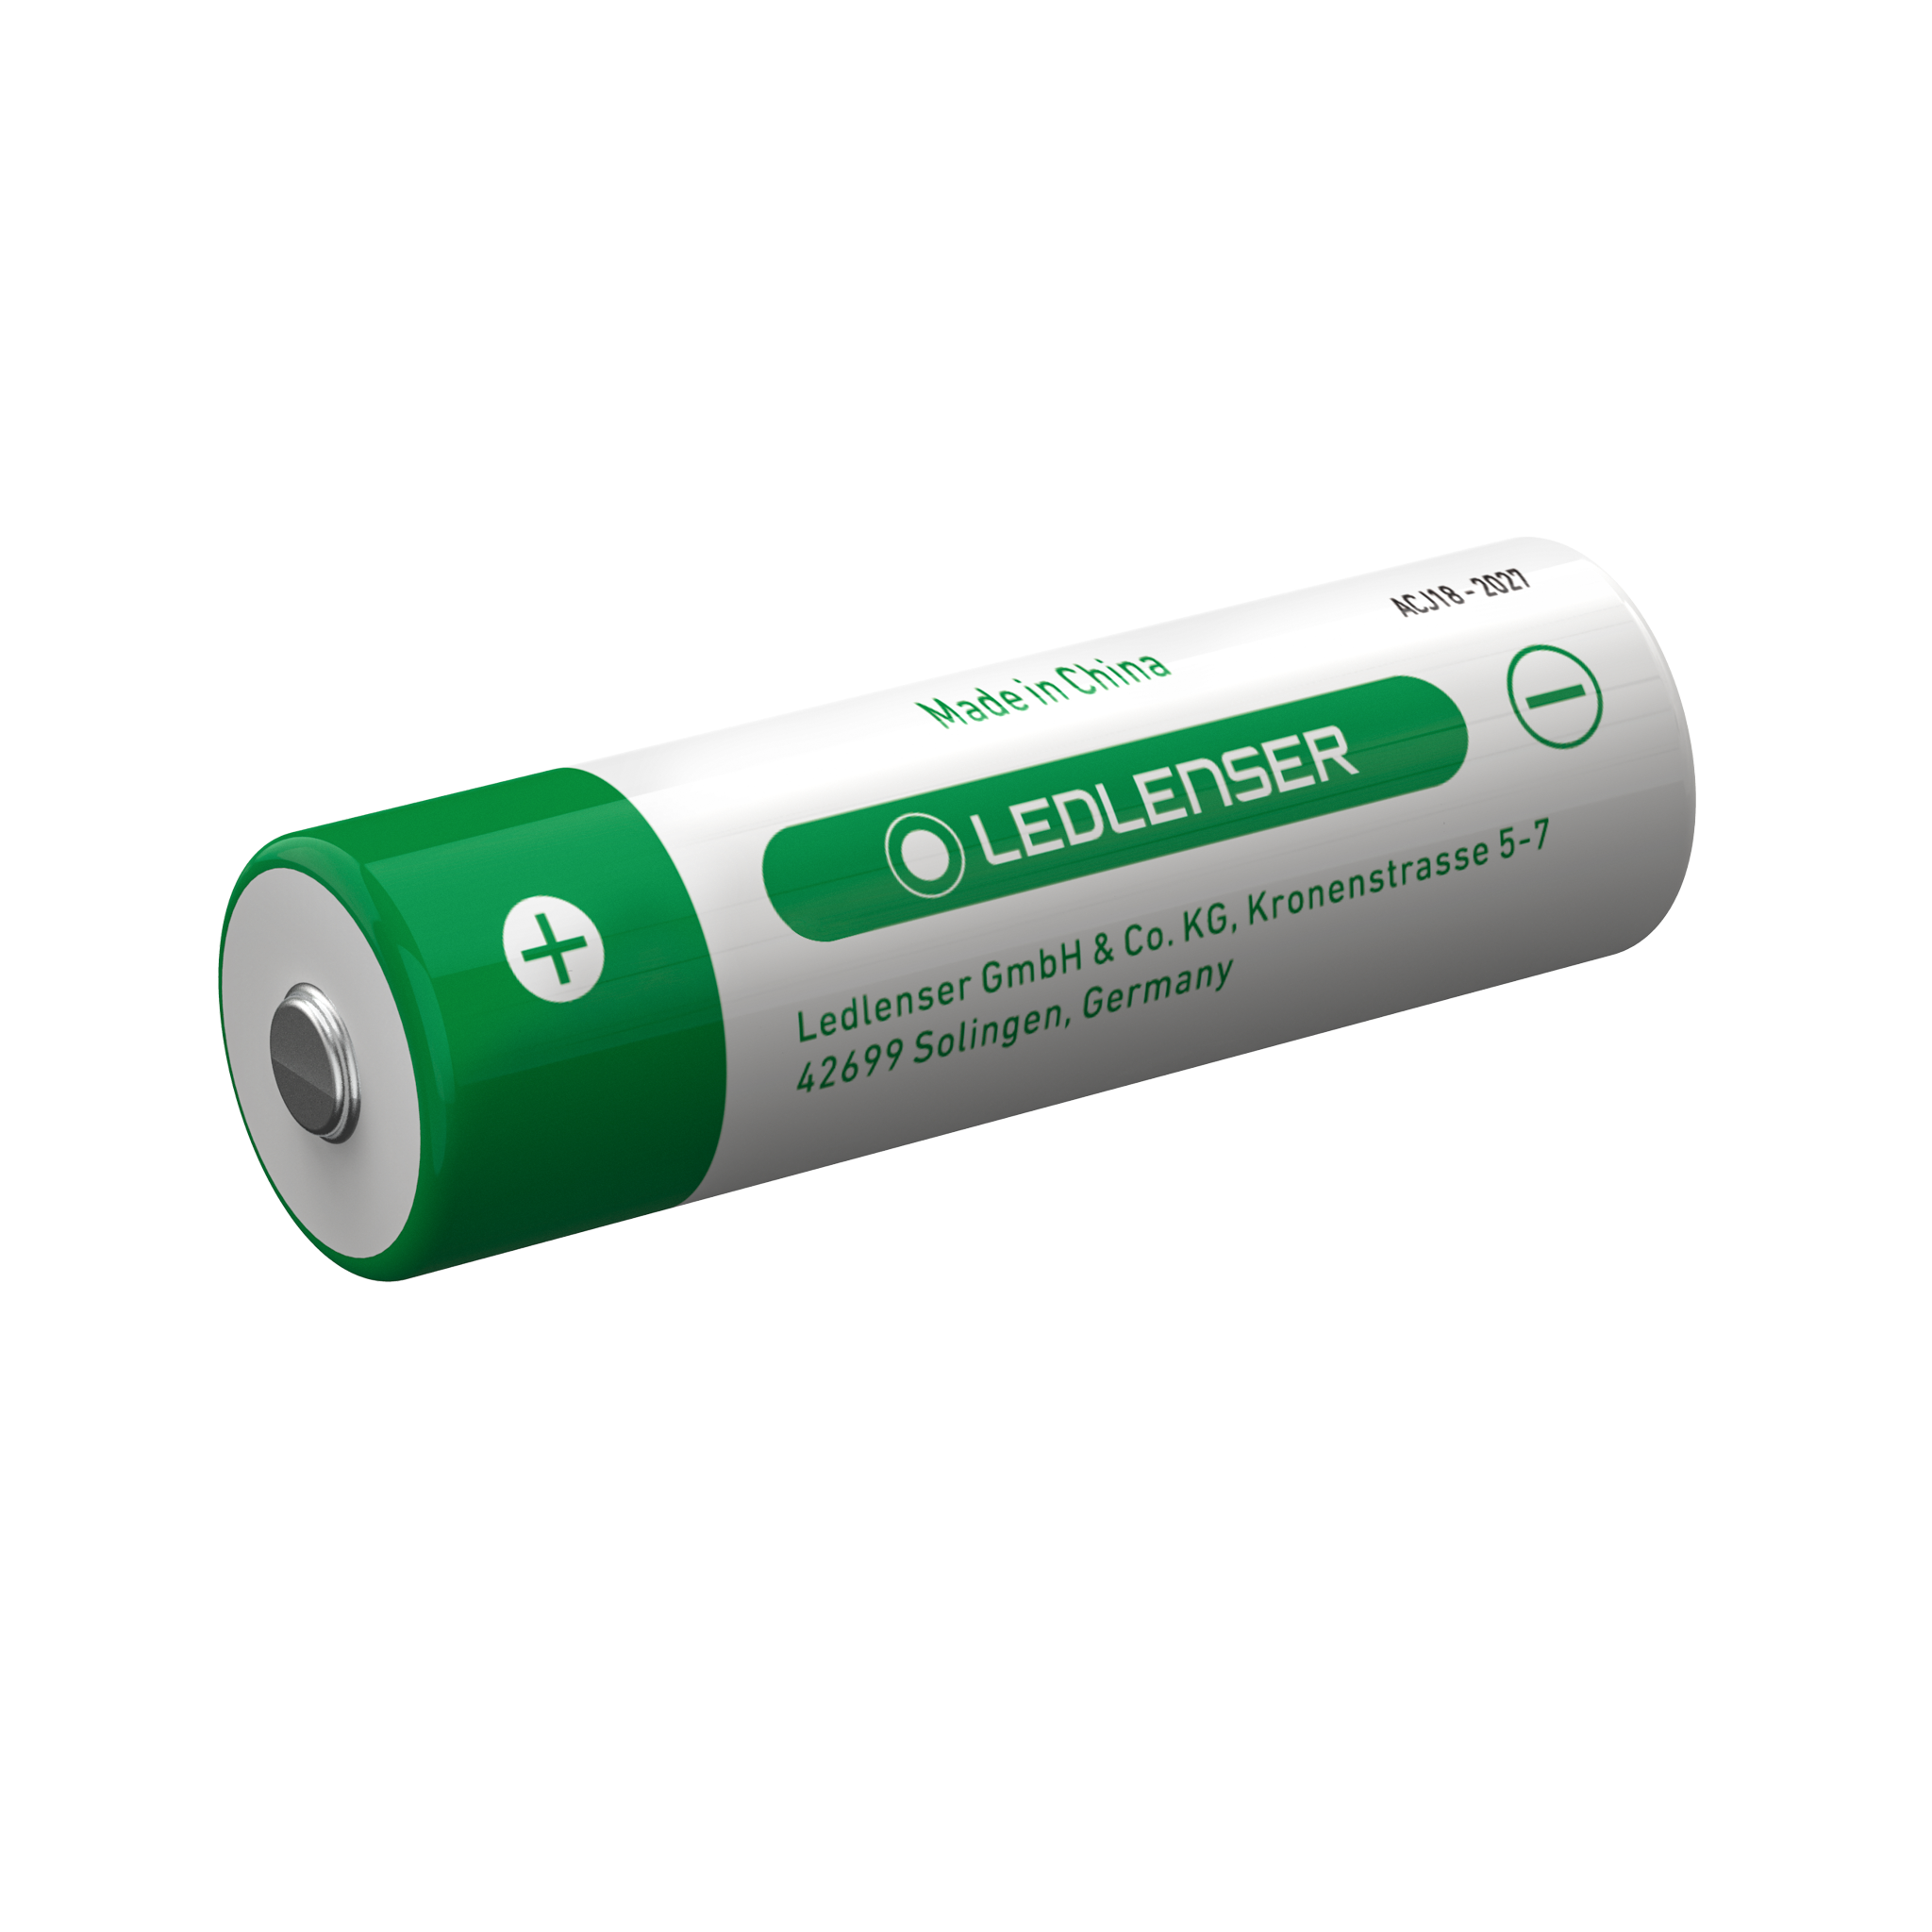 21700 Li-ion Rechargeable Battery 4800mAh